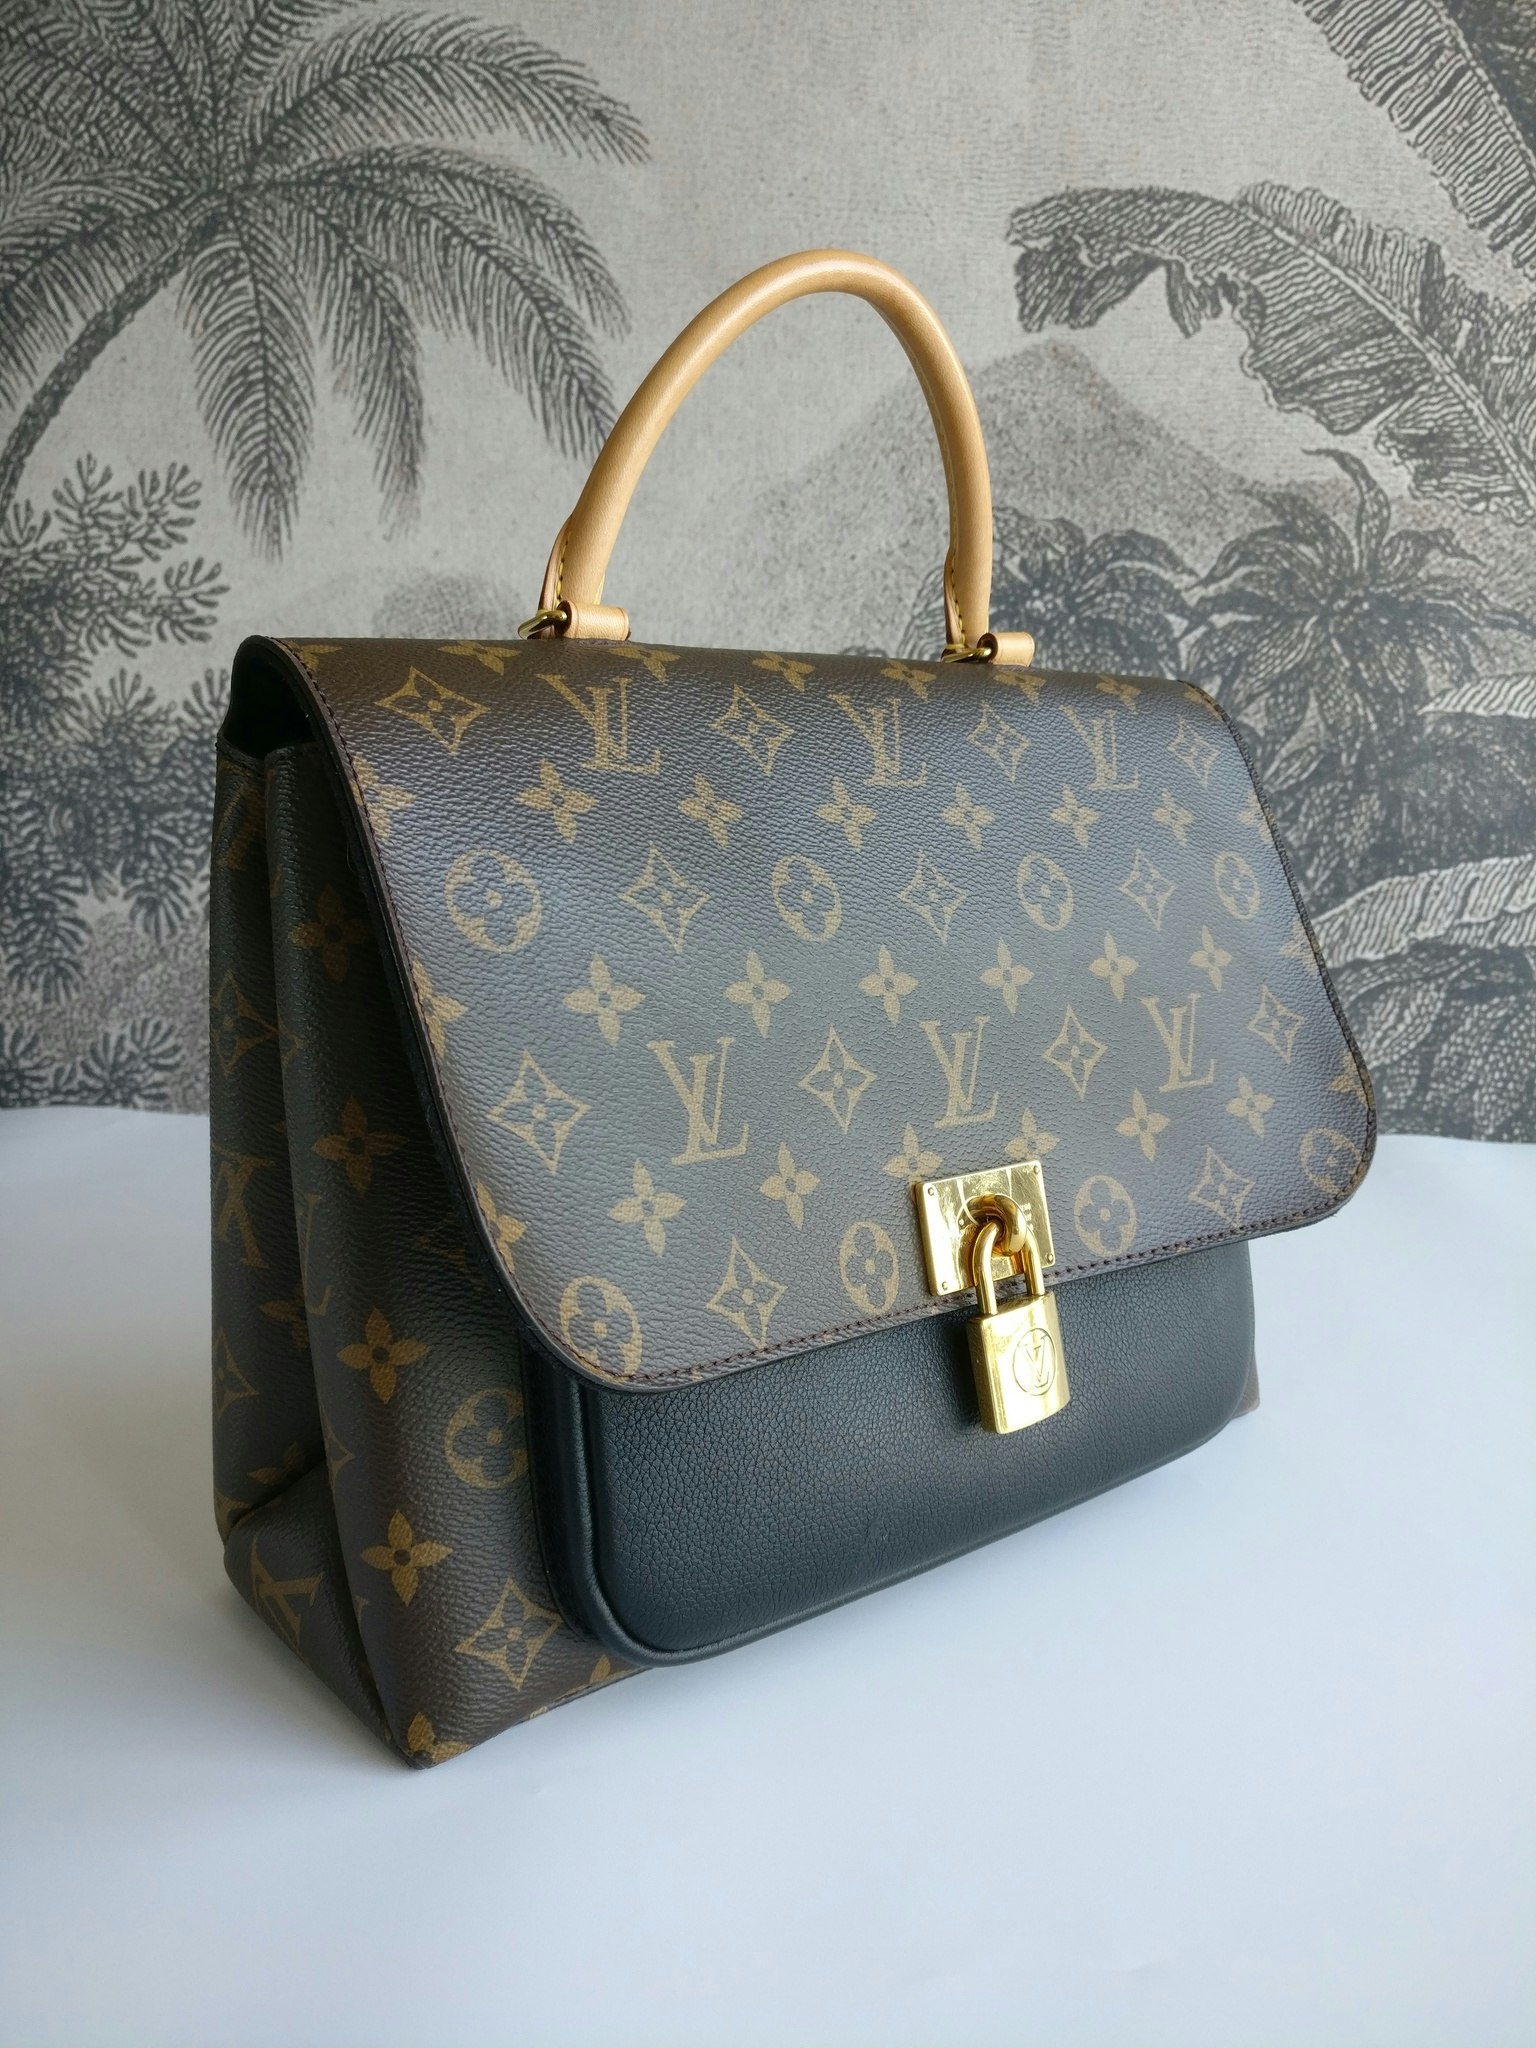 Louis Vuitton Marignan - Good or Bag